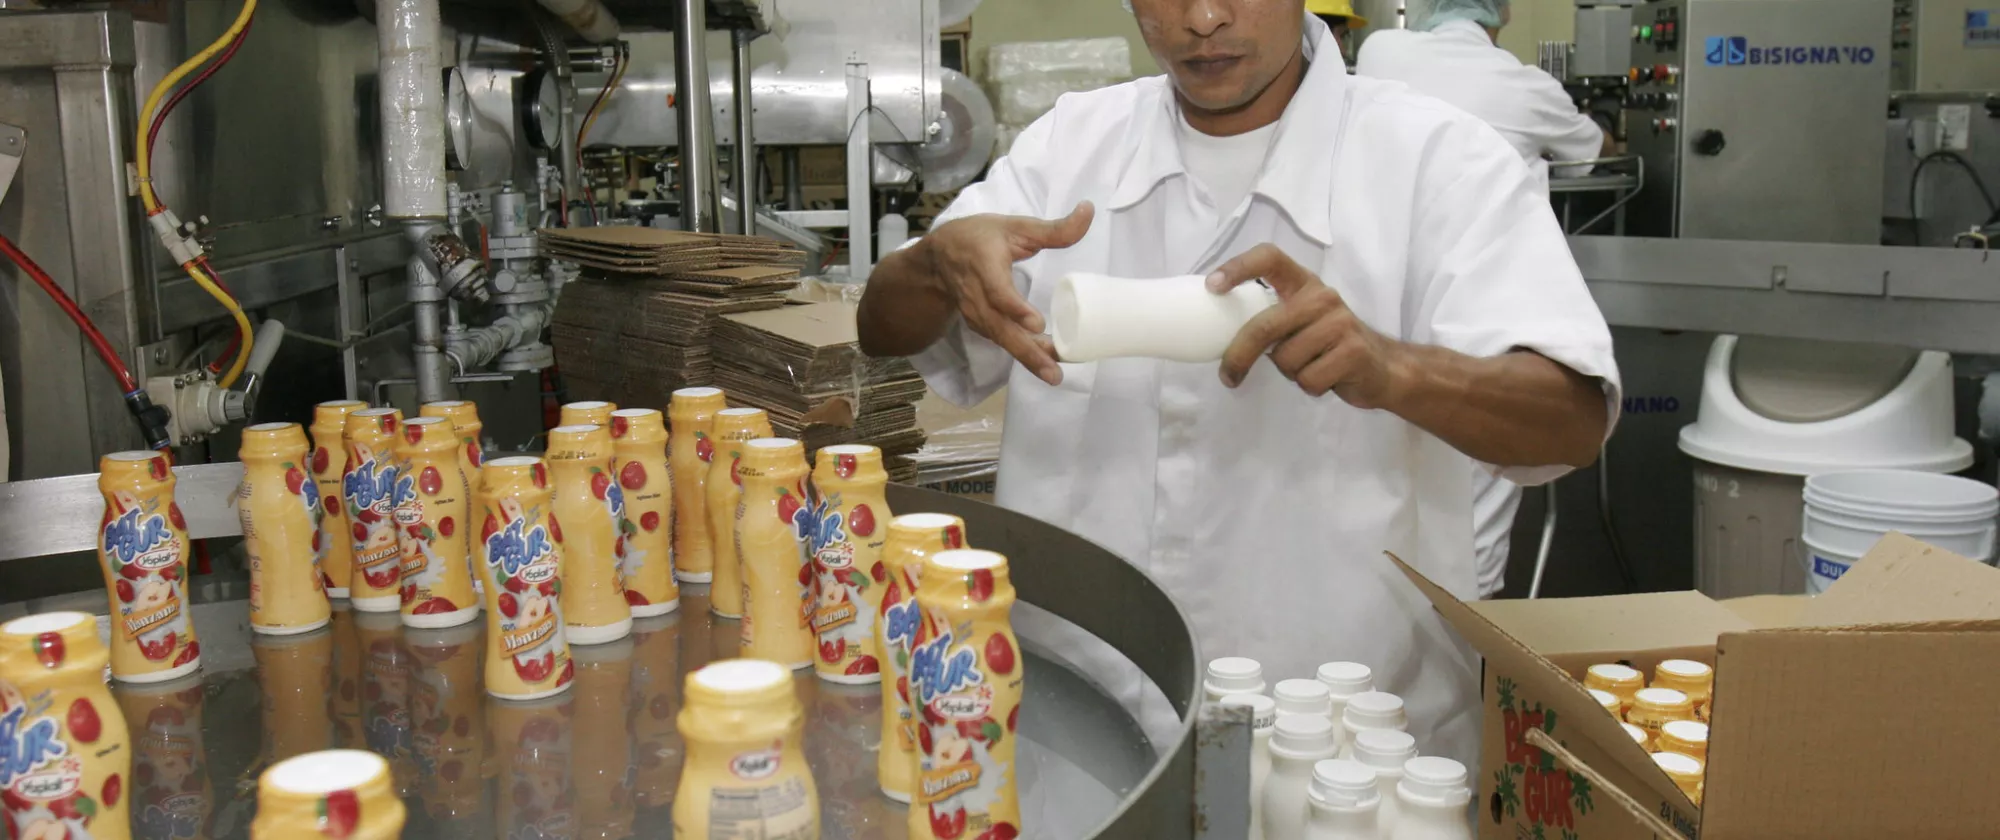 Worker packaging yogurt bottles.